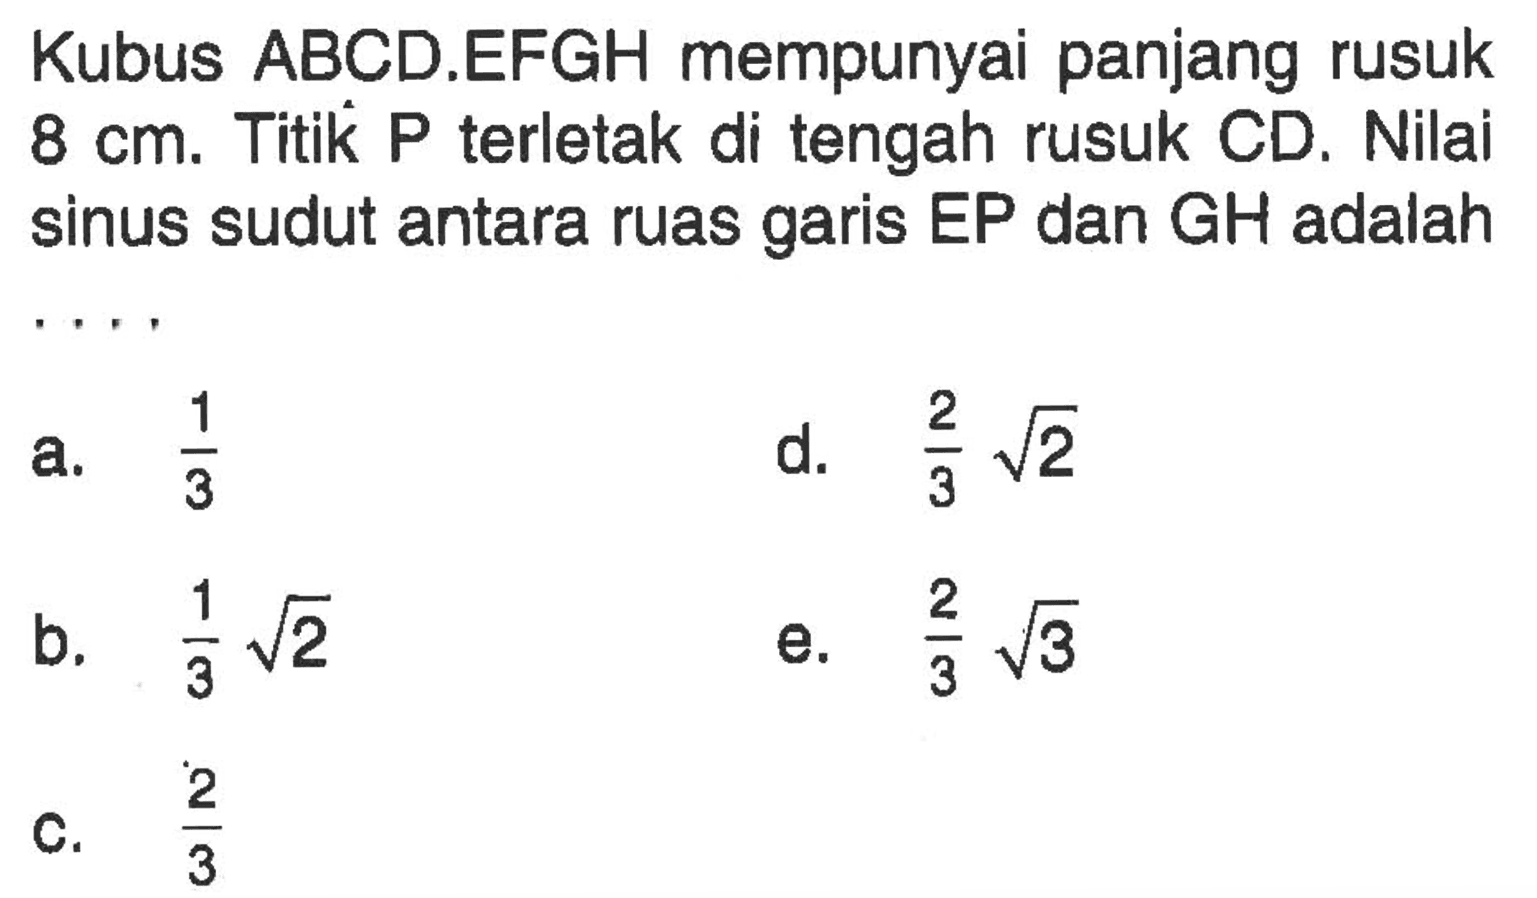 Kubus ABCD.EFGH mempunyai panjang rusuk cm. Titik P terletak di tengah rusuk CD. Nilai 8 sinus sudut antara ruas garis EP dan GH adalah